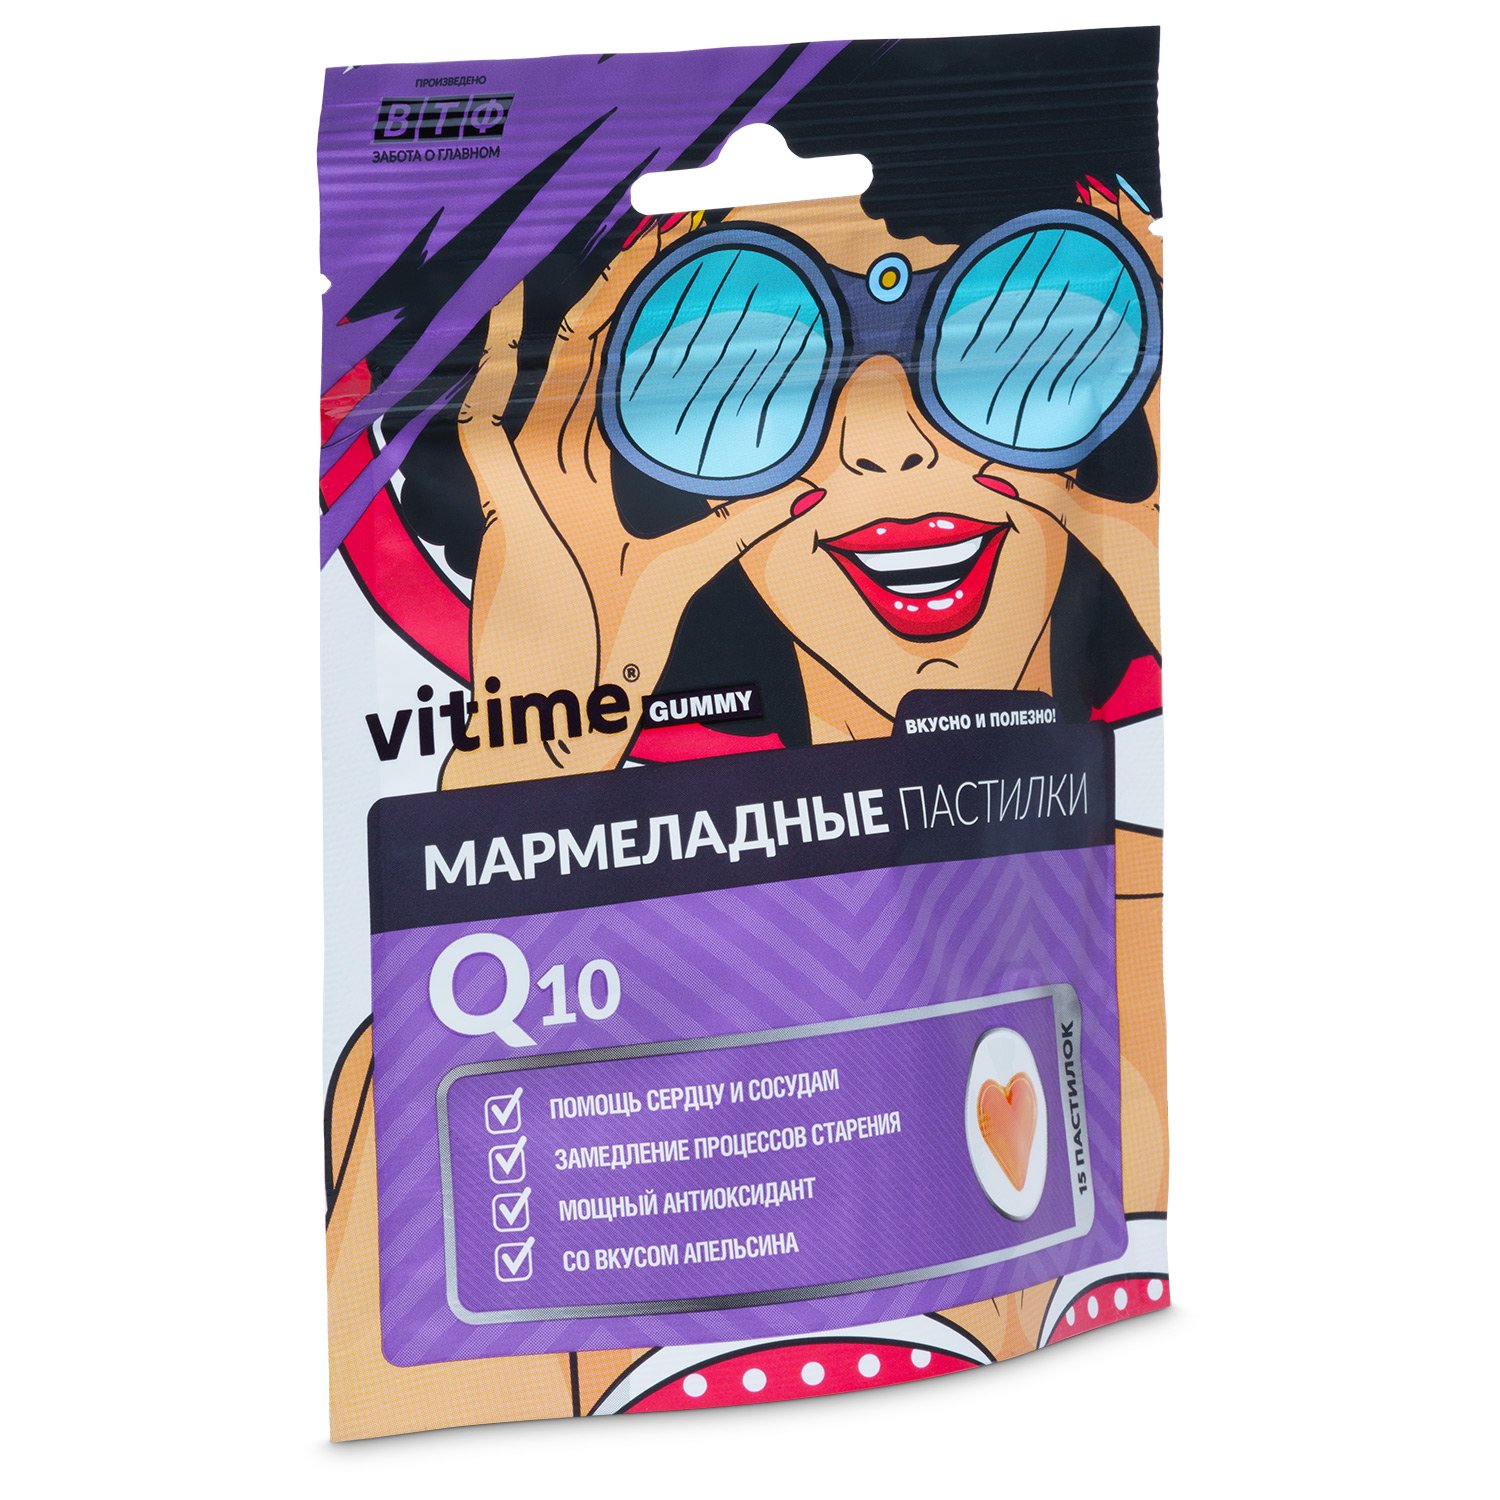 Биологически активная добавка Vitime Gummy Q10 мармеладные со вкусом апельсина 15пастилок - фото 2